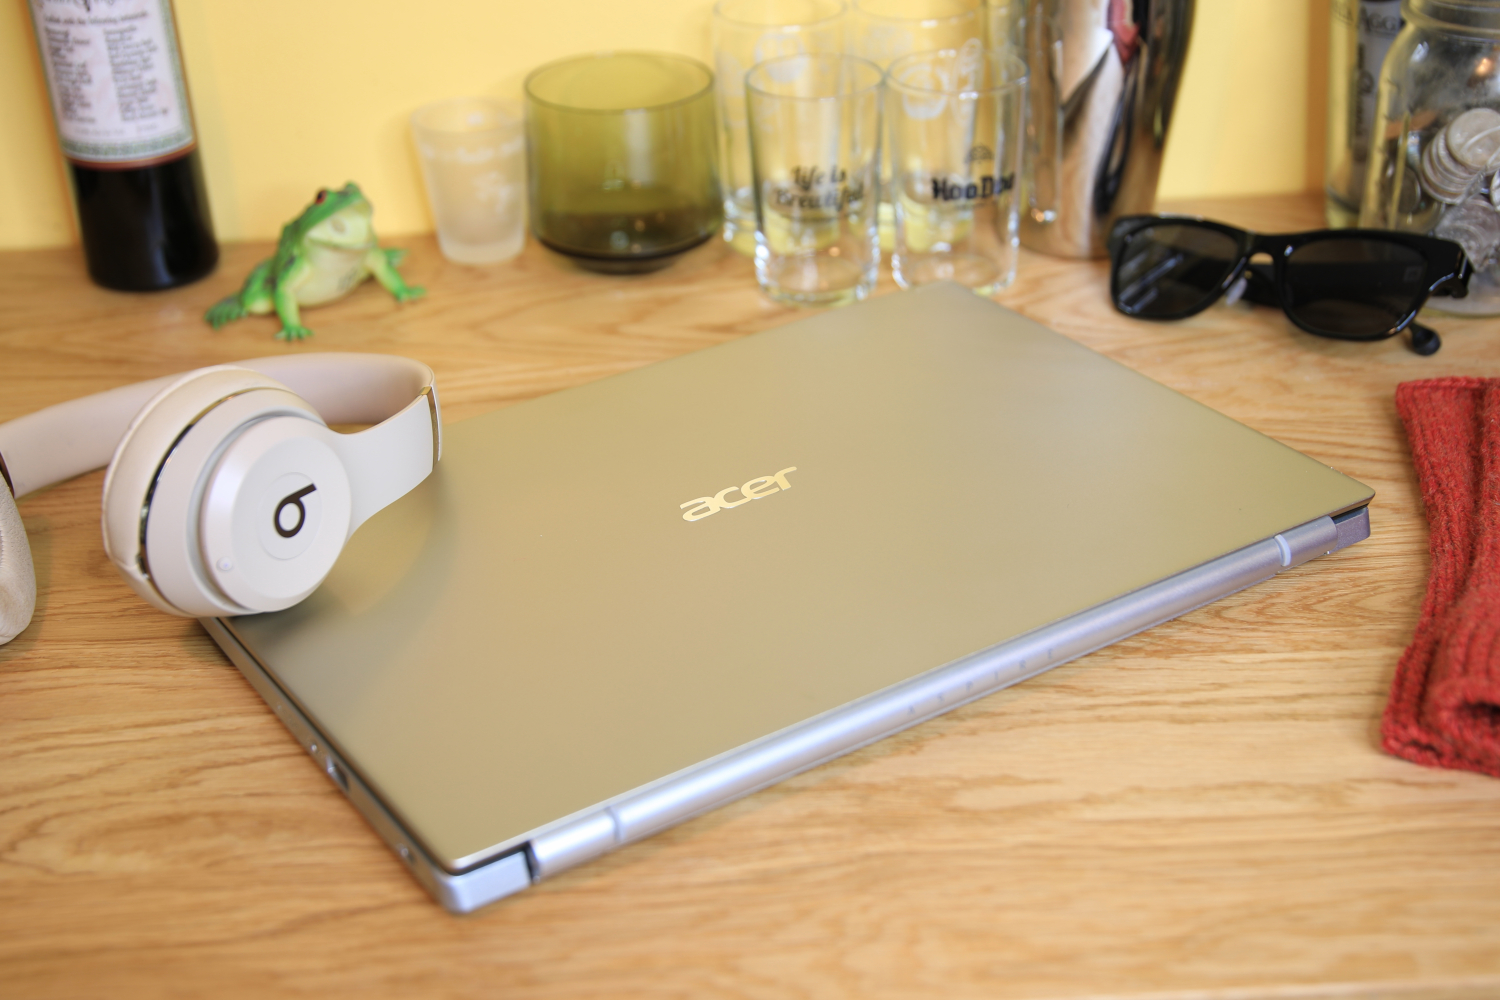 Acer Aspire 3 - أفضل كمبيوتر محمول فرعي بسعر 500 دولار بشكل عام